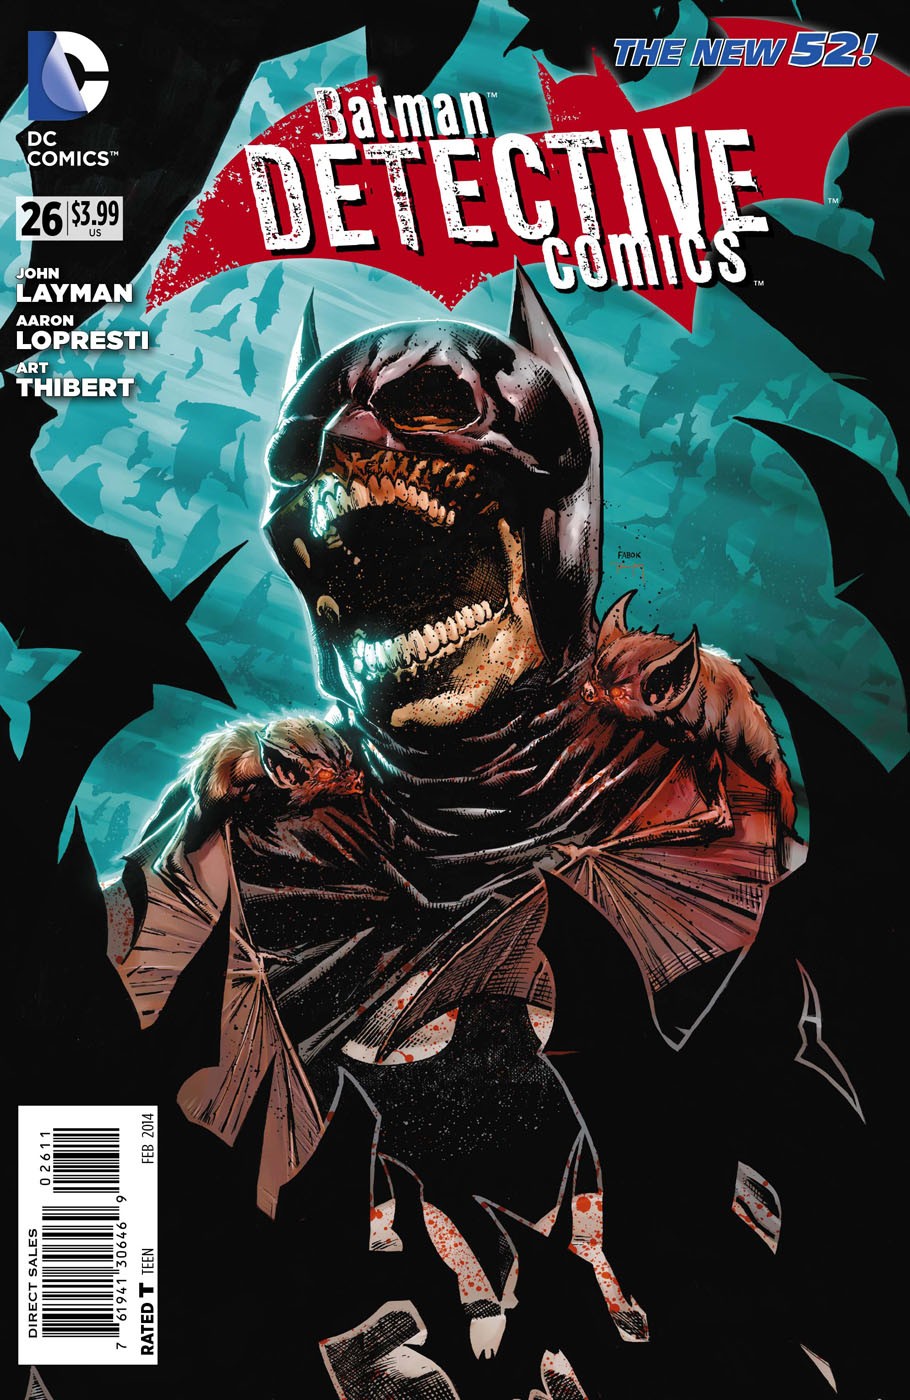 Detective Comics Vol. 2 #26